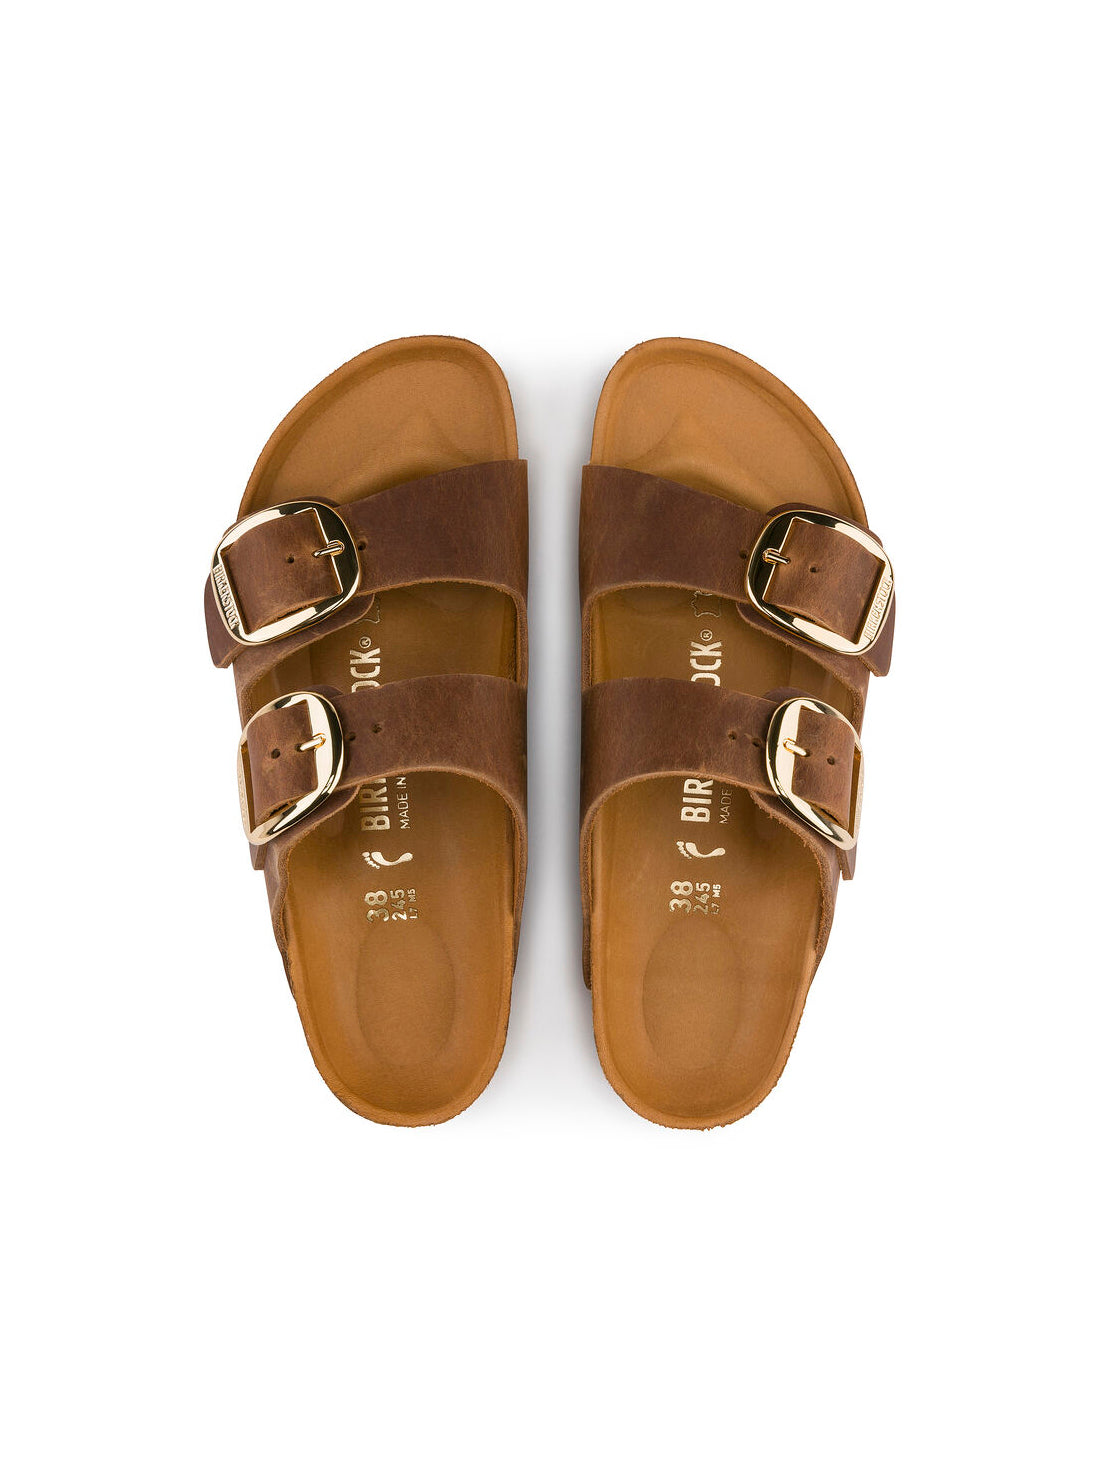 birkenstock arizona big buckle sandals in oiled leather cognac narrow